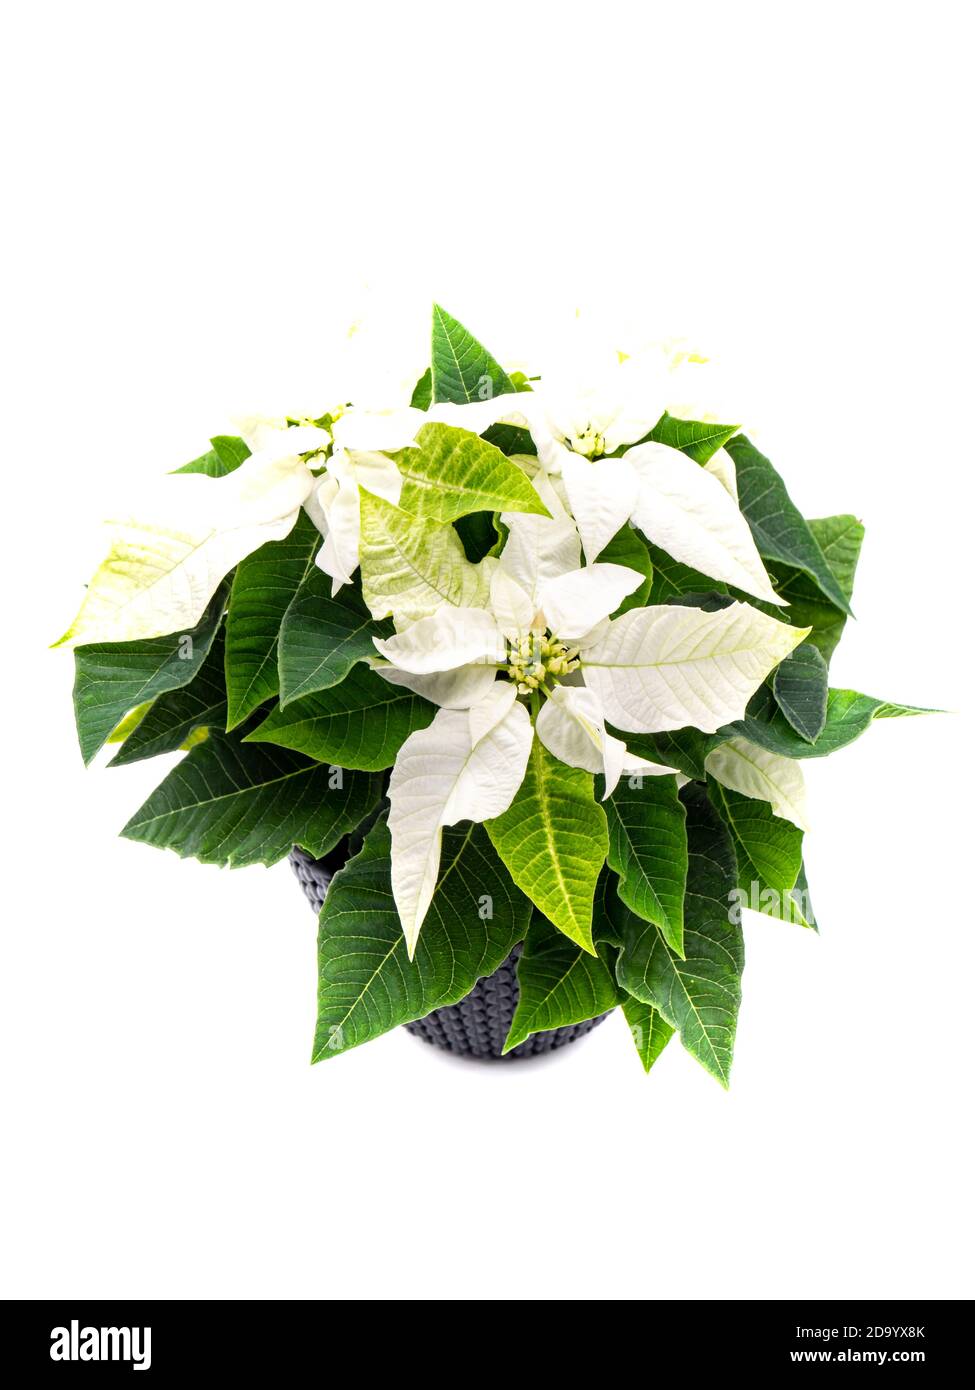 Plante de poinsettia blanche isolée sur fond blanc Photo Stock - Alamy